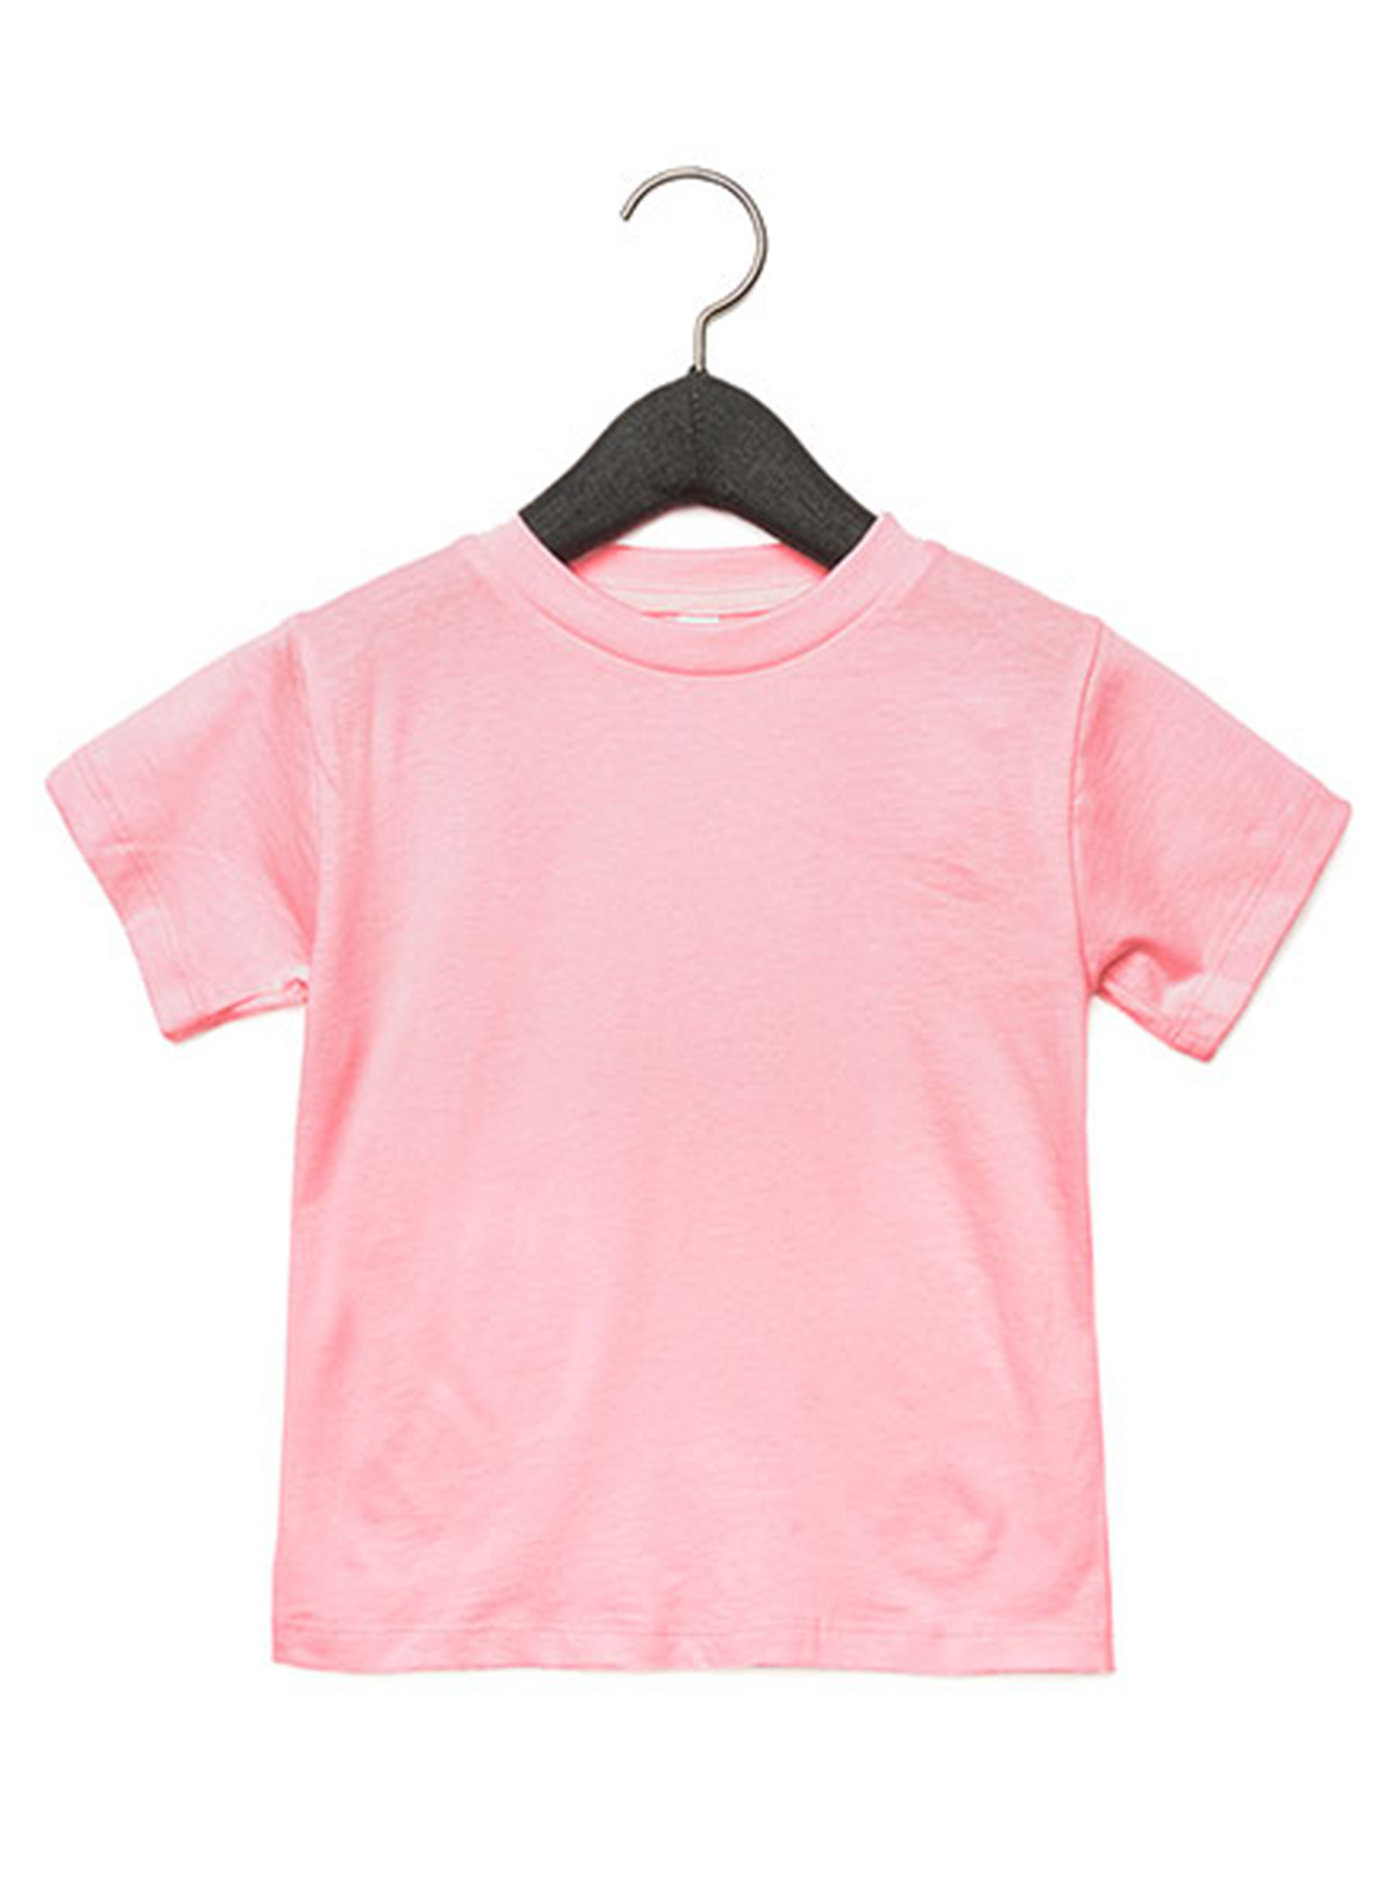 Dětské tričko Jersey - Růžová 5T (110)